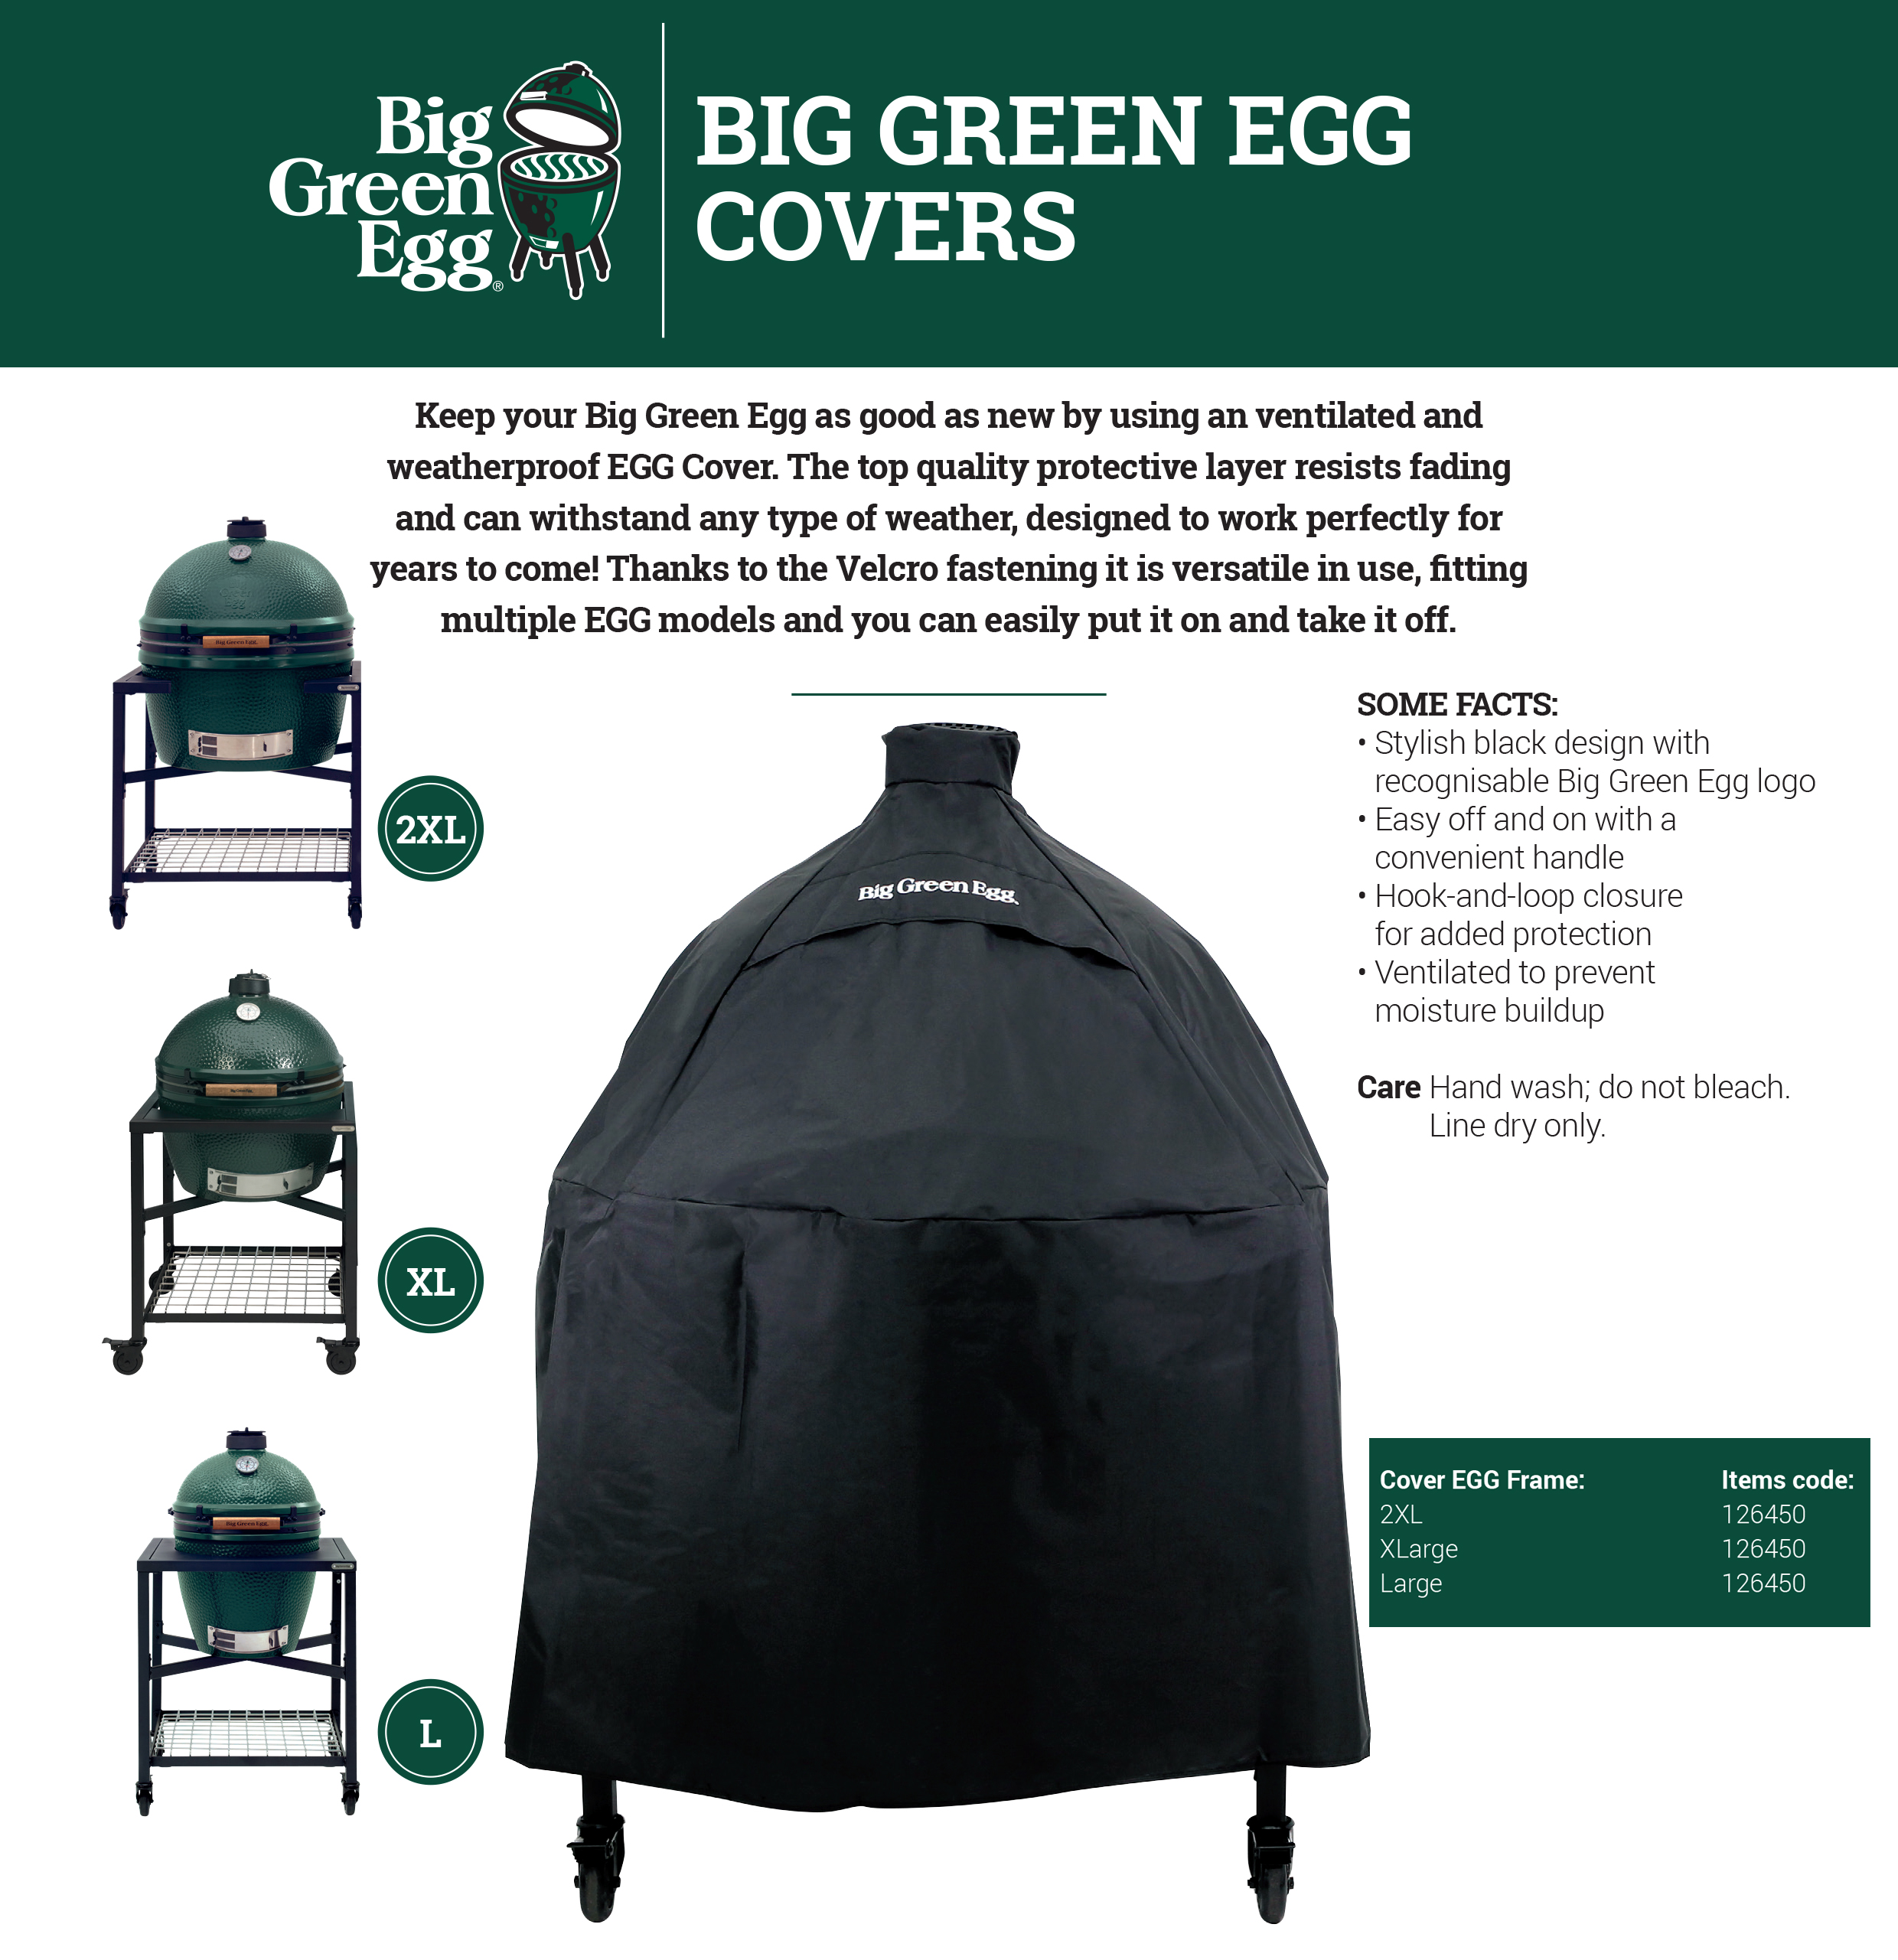 Beschermhoes voor Big Green Egg 2XL XL L in EGG frame